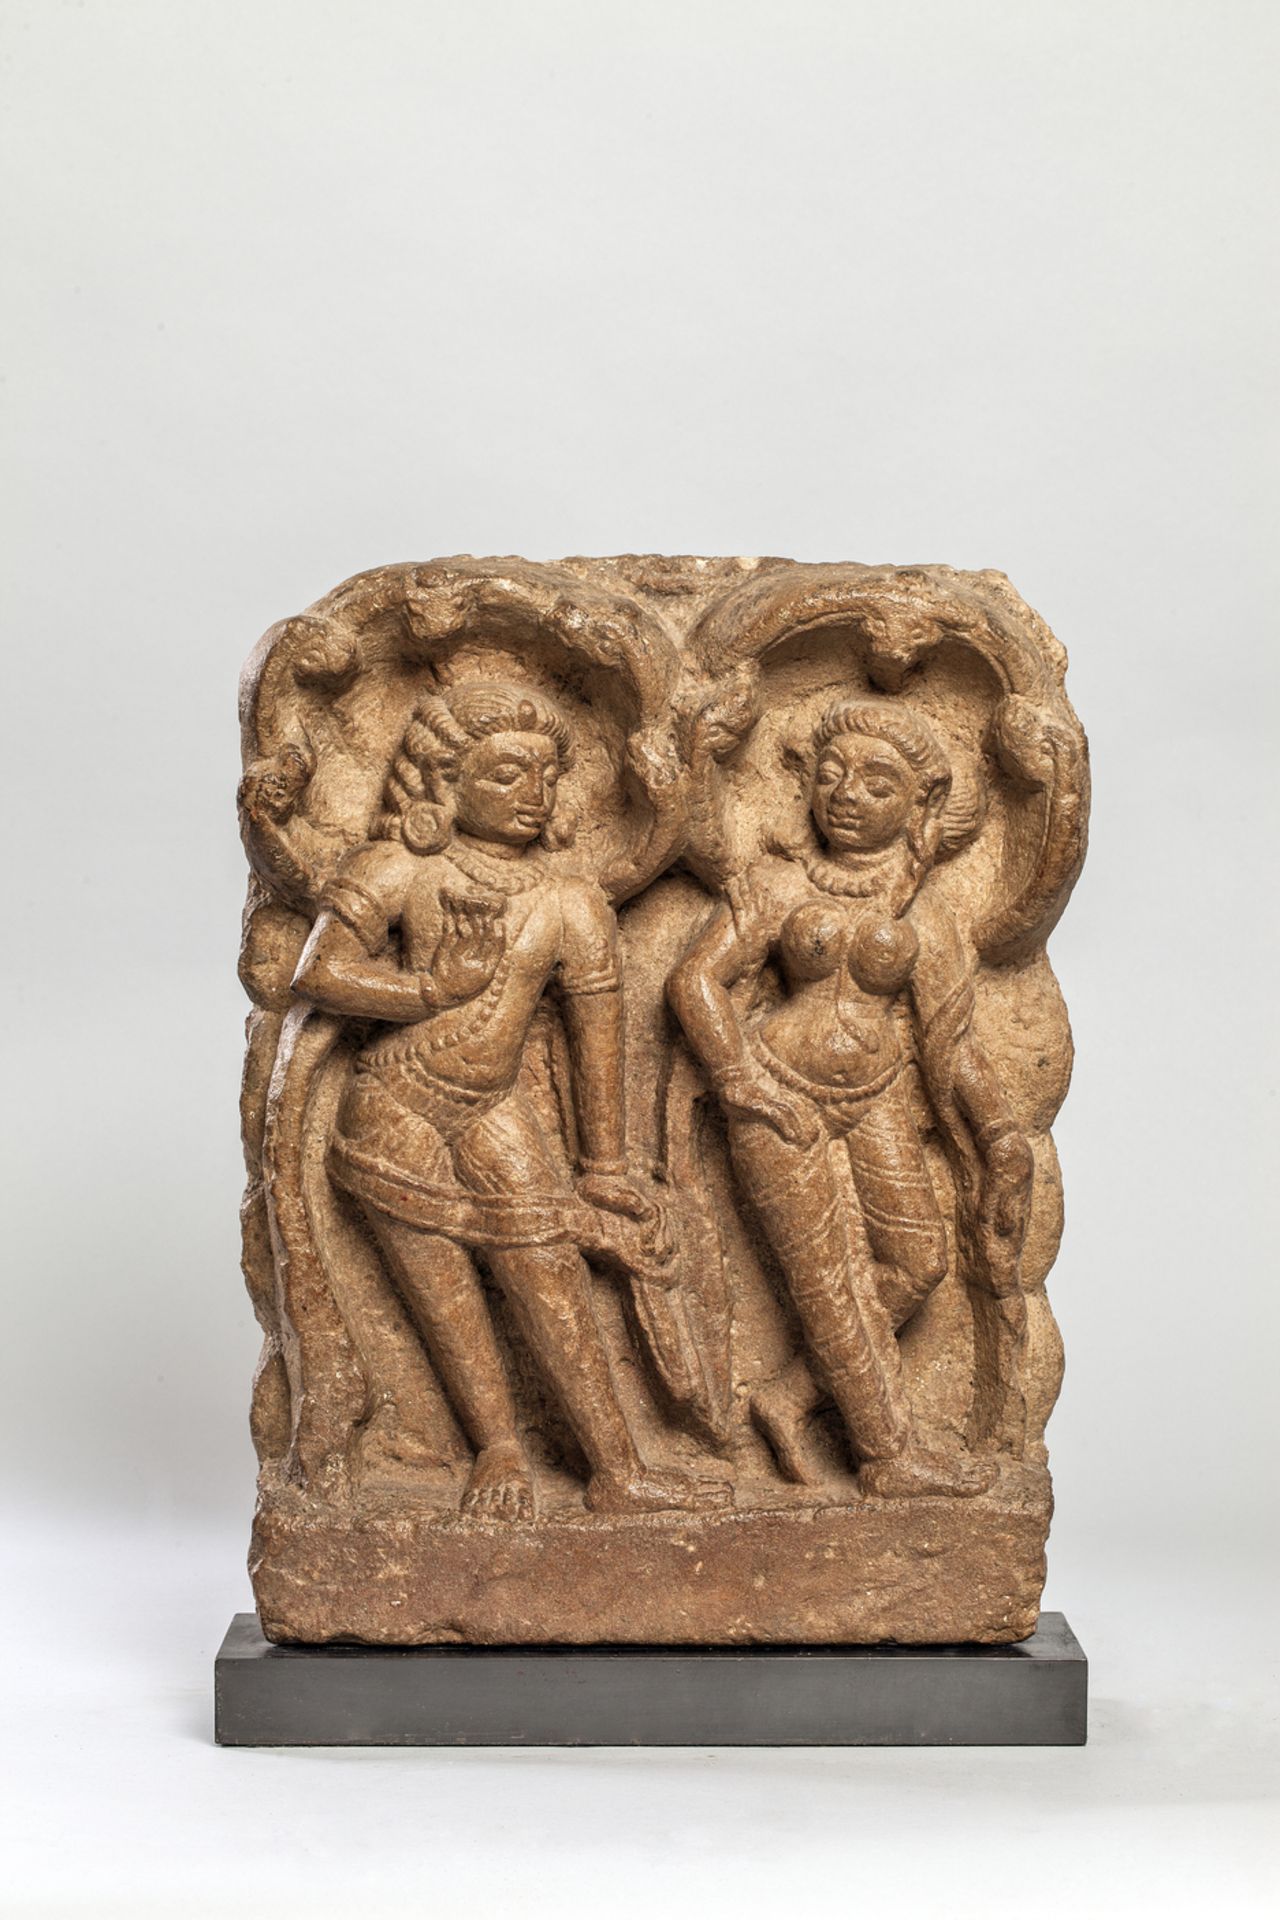 Haut relief de temple illustrant un couple Apsara Gandharva debout en tribanga abrités par des